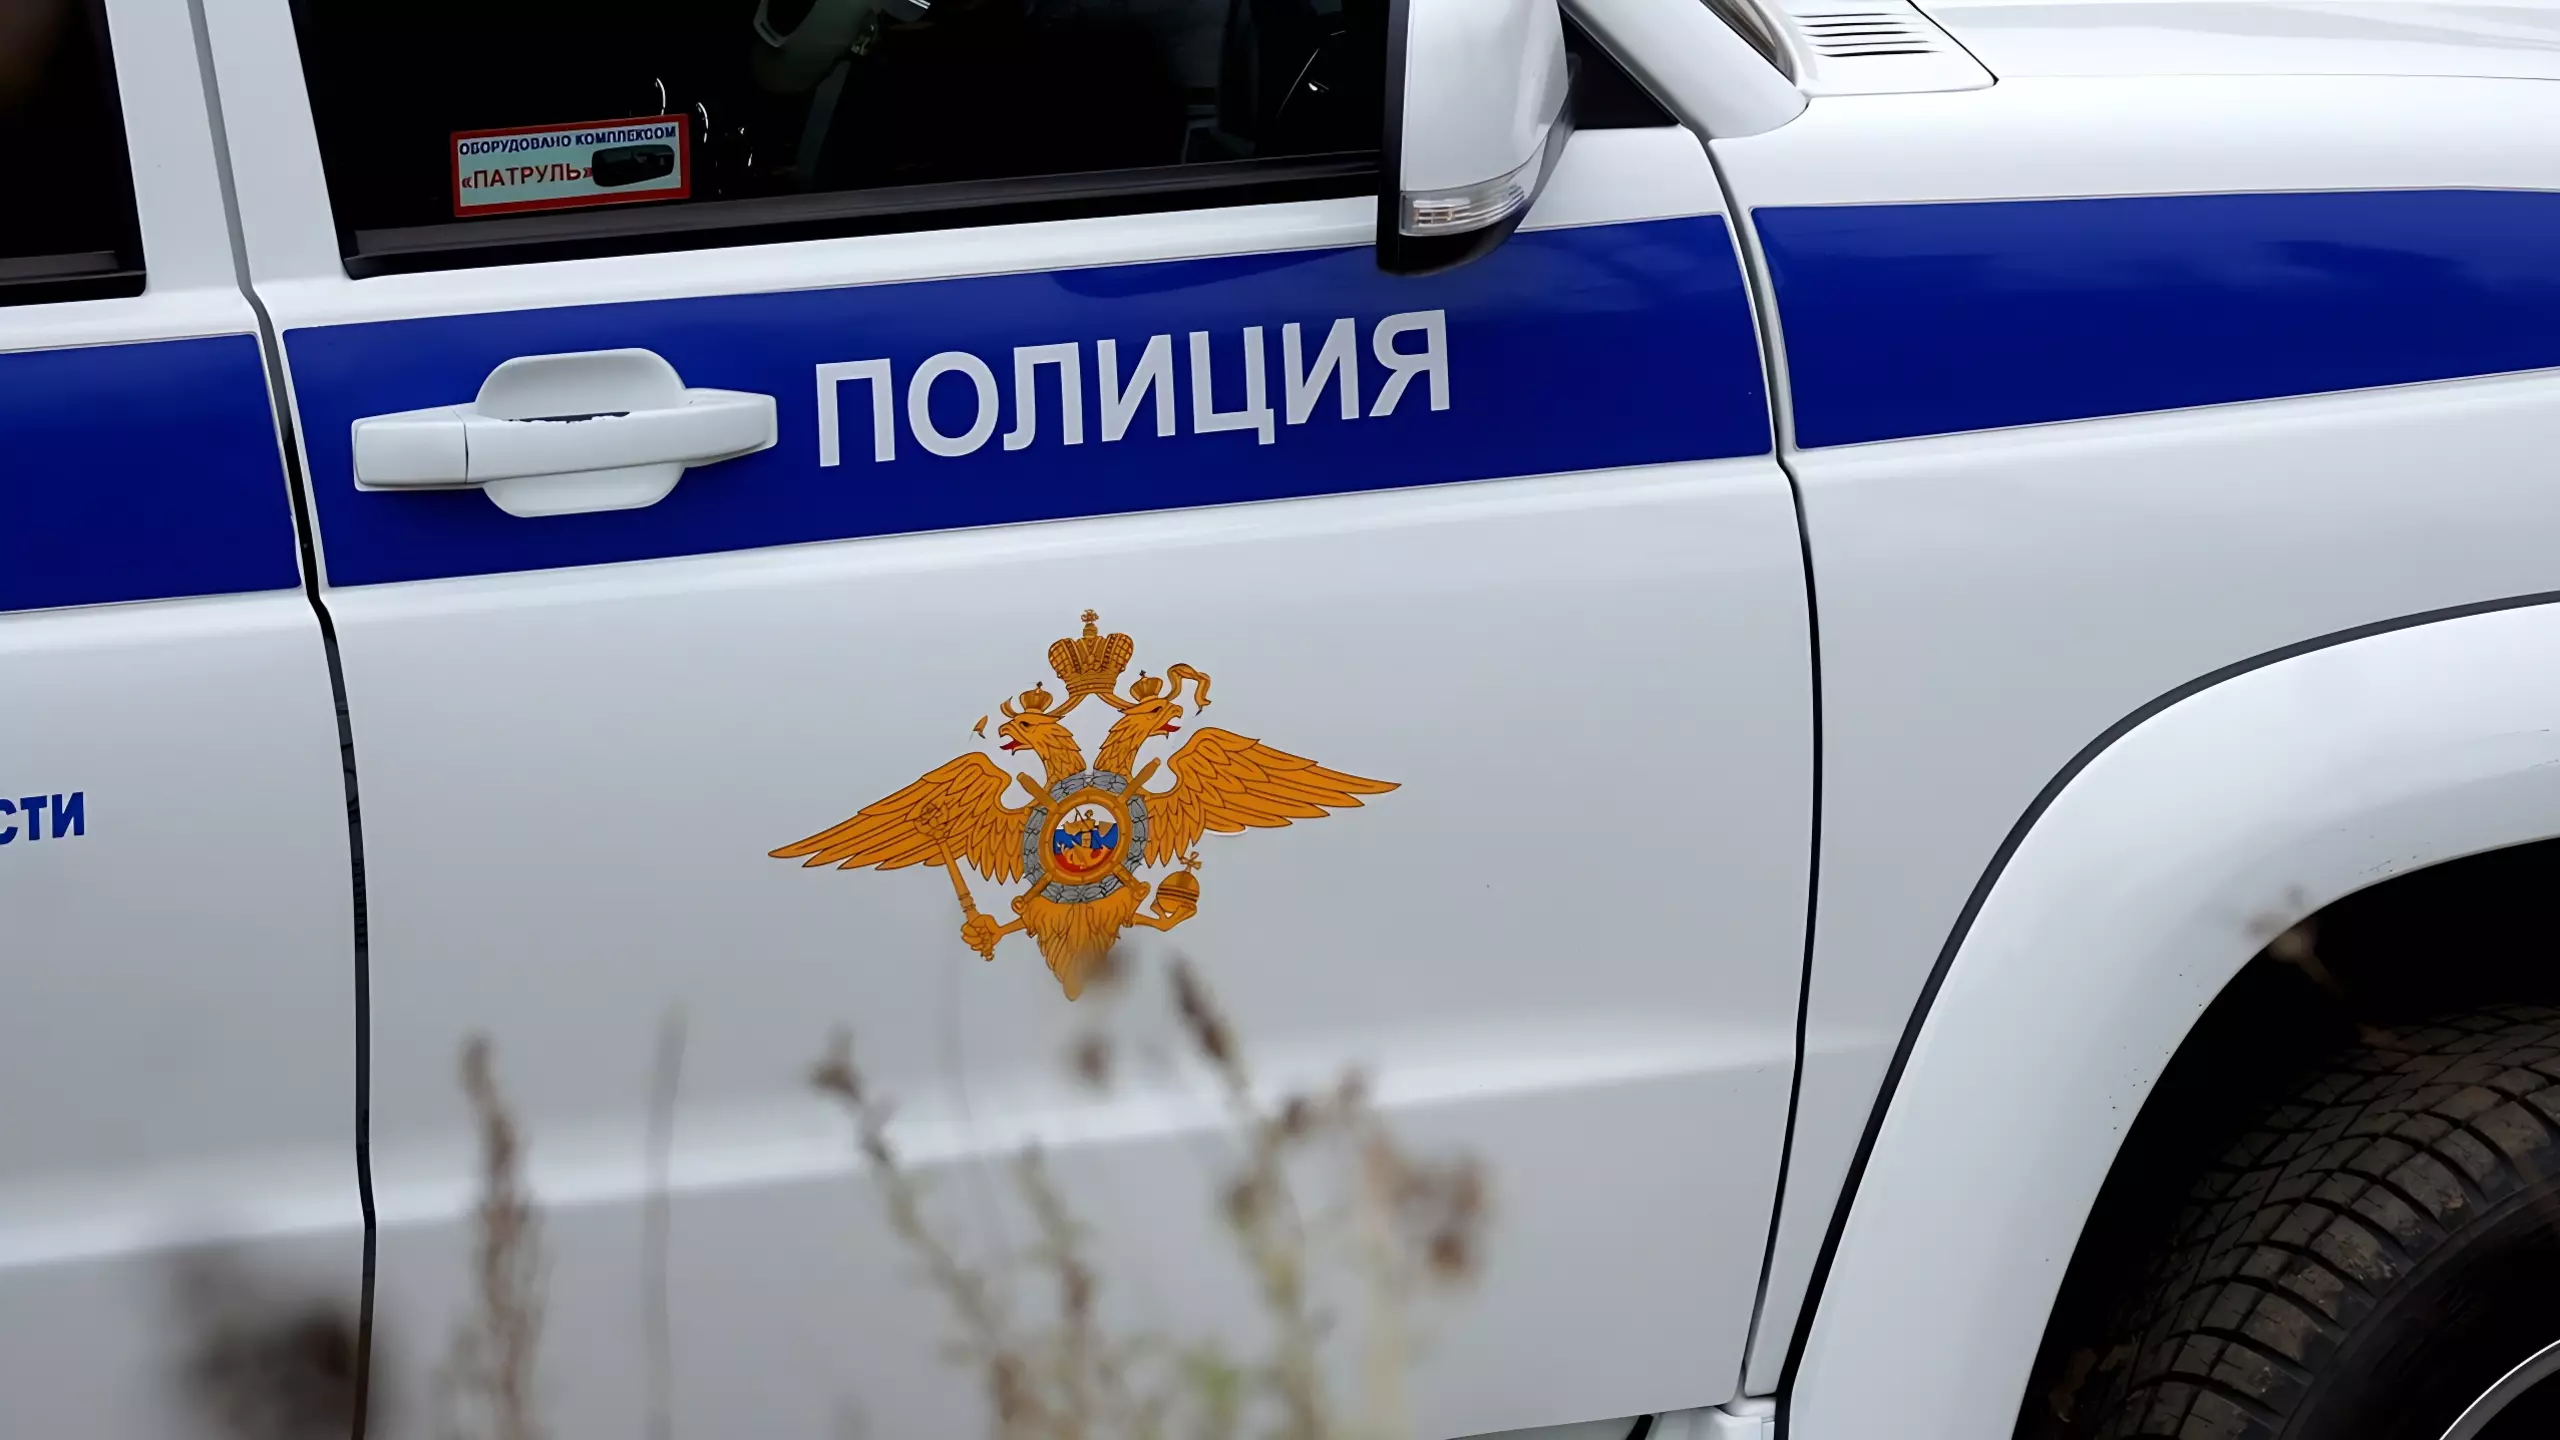 В Ижевске задержали подозреваемого в угоне арендованного авто